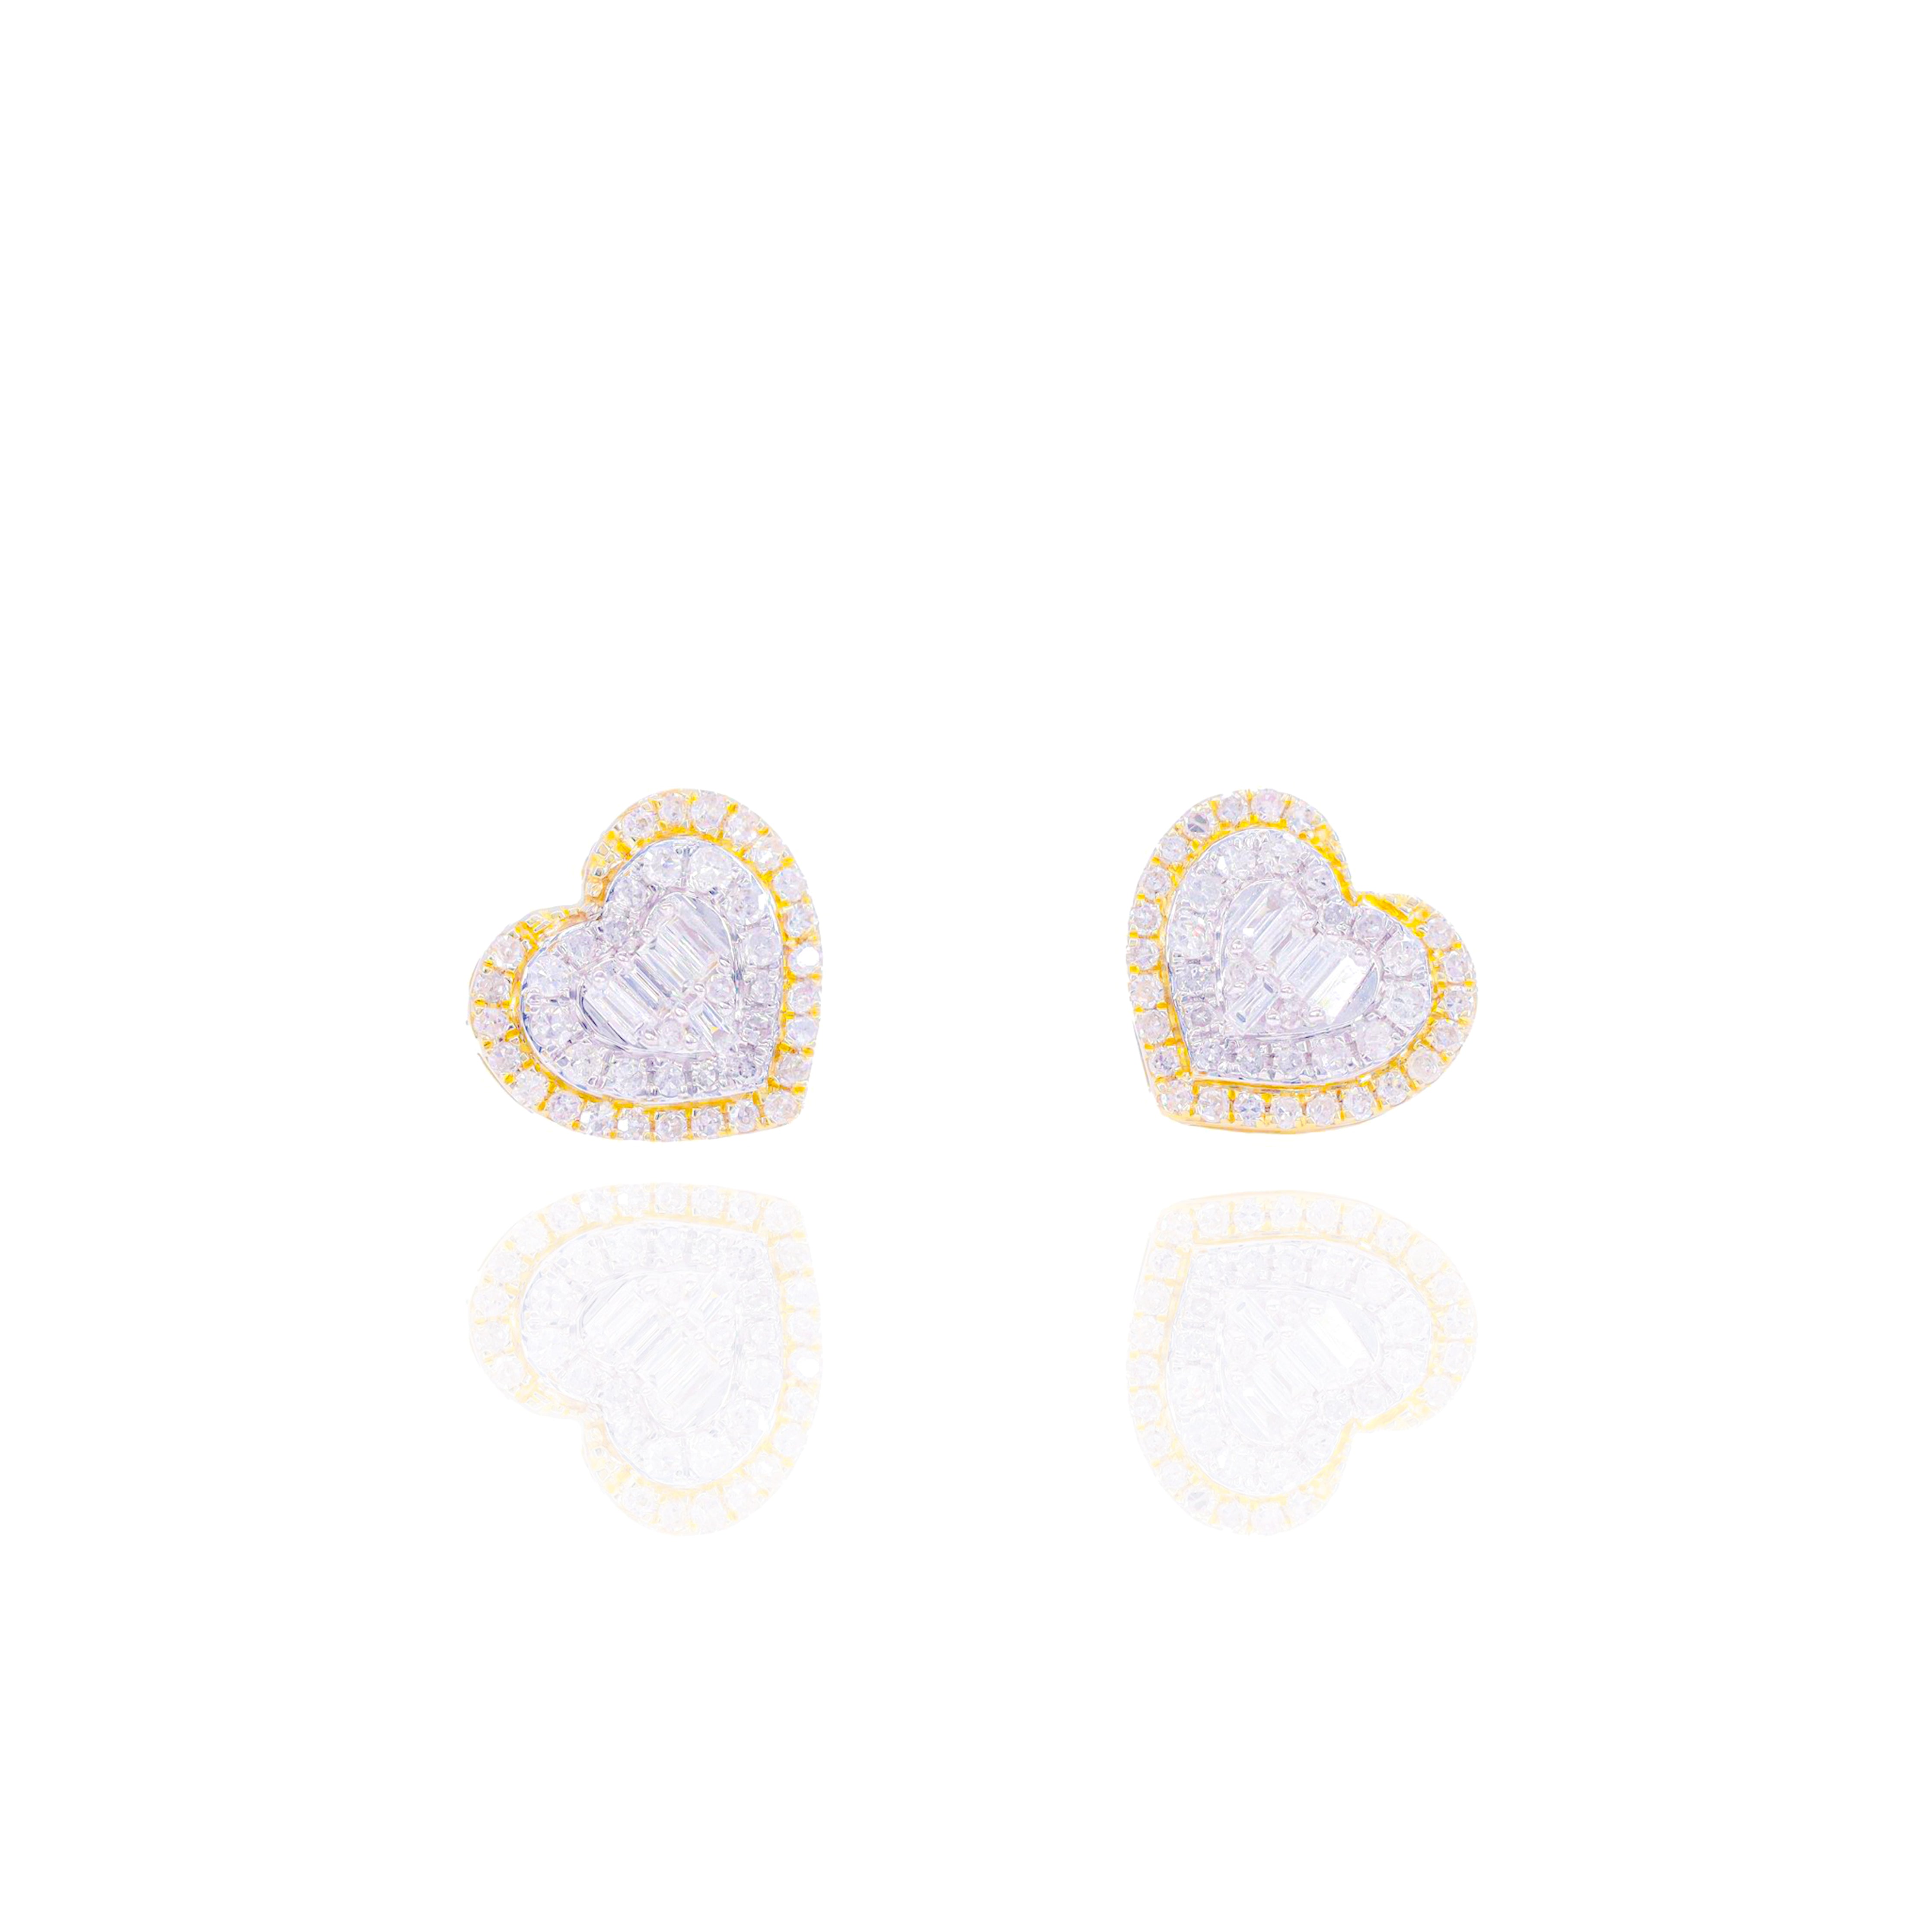 Two-Tone Heart w/ Baguette Center Diamond Earrings